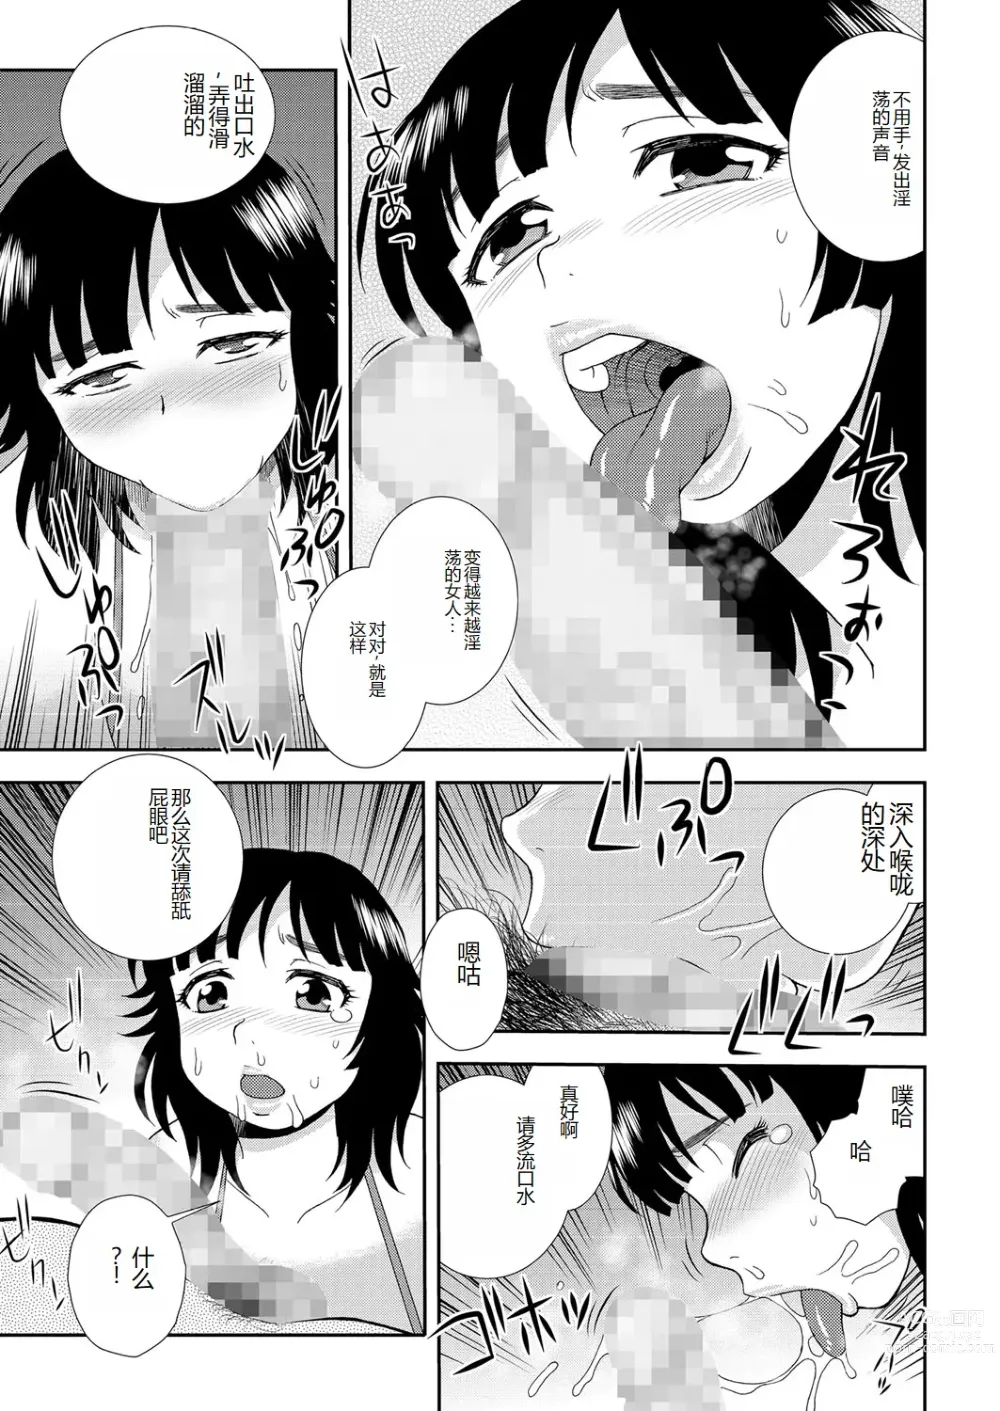 Page 7 of manga Ringetsu botehara tsuma fūzoku mensetsu